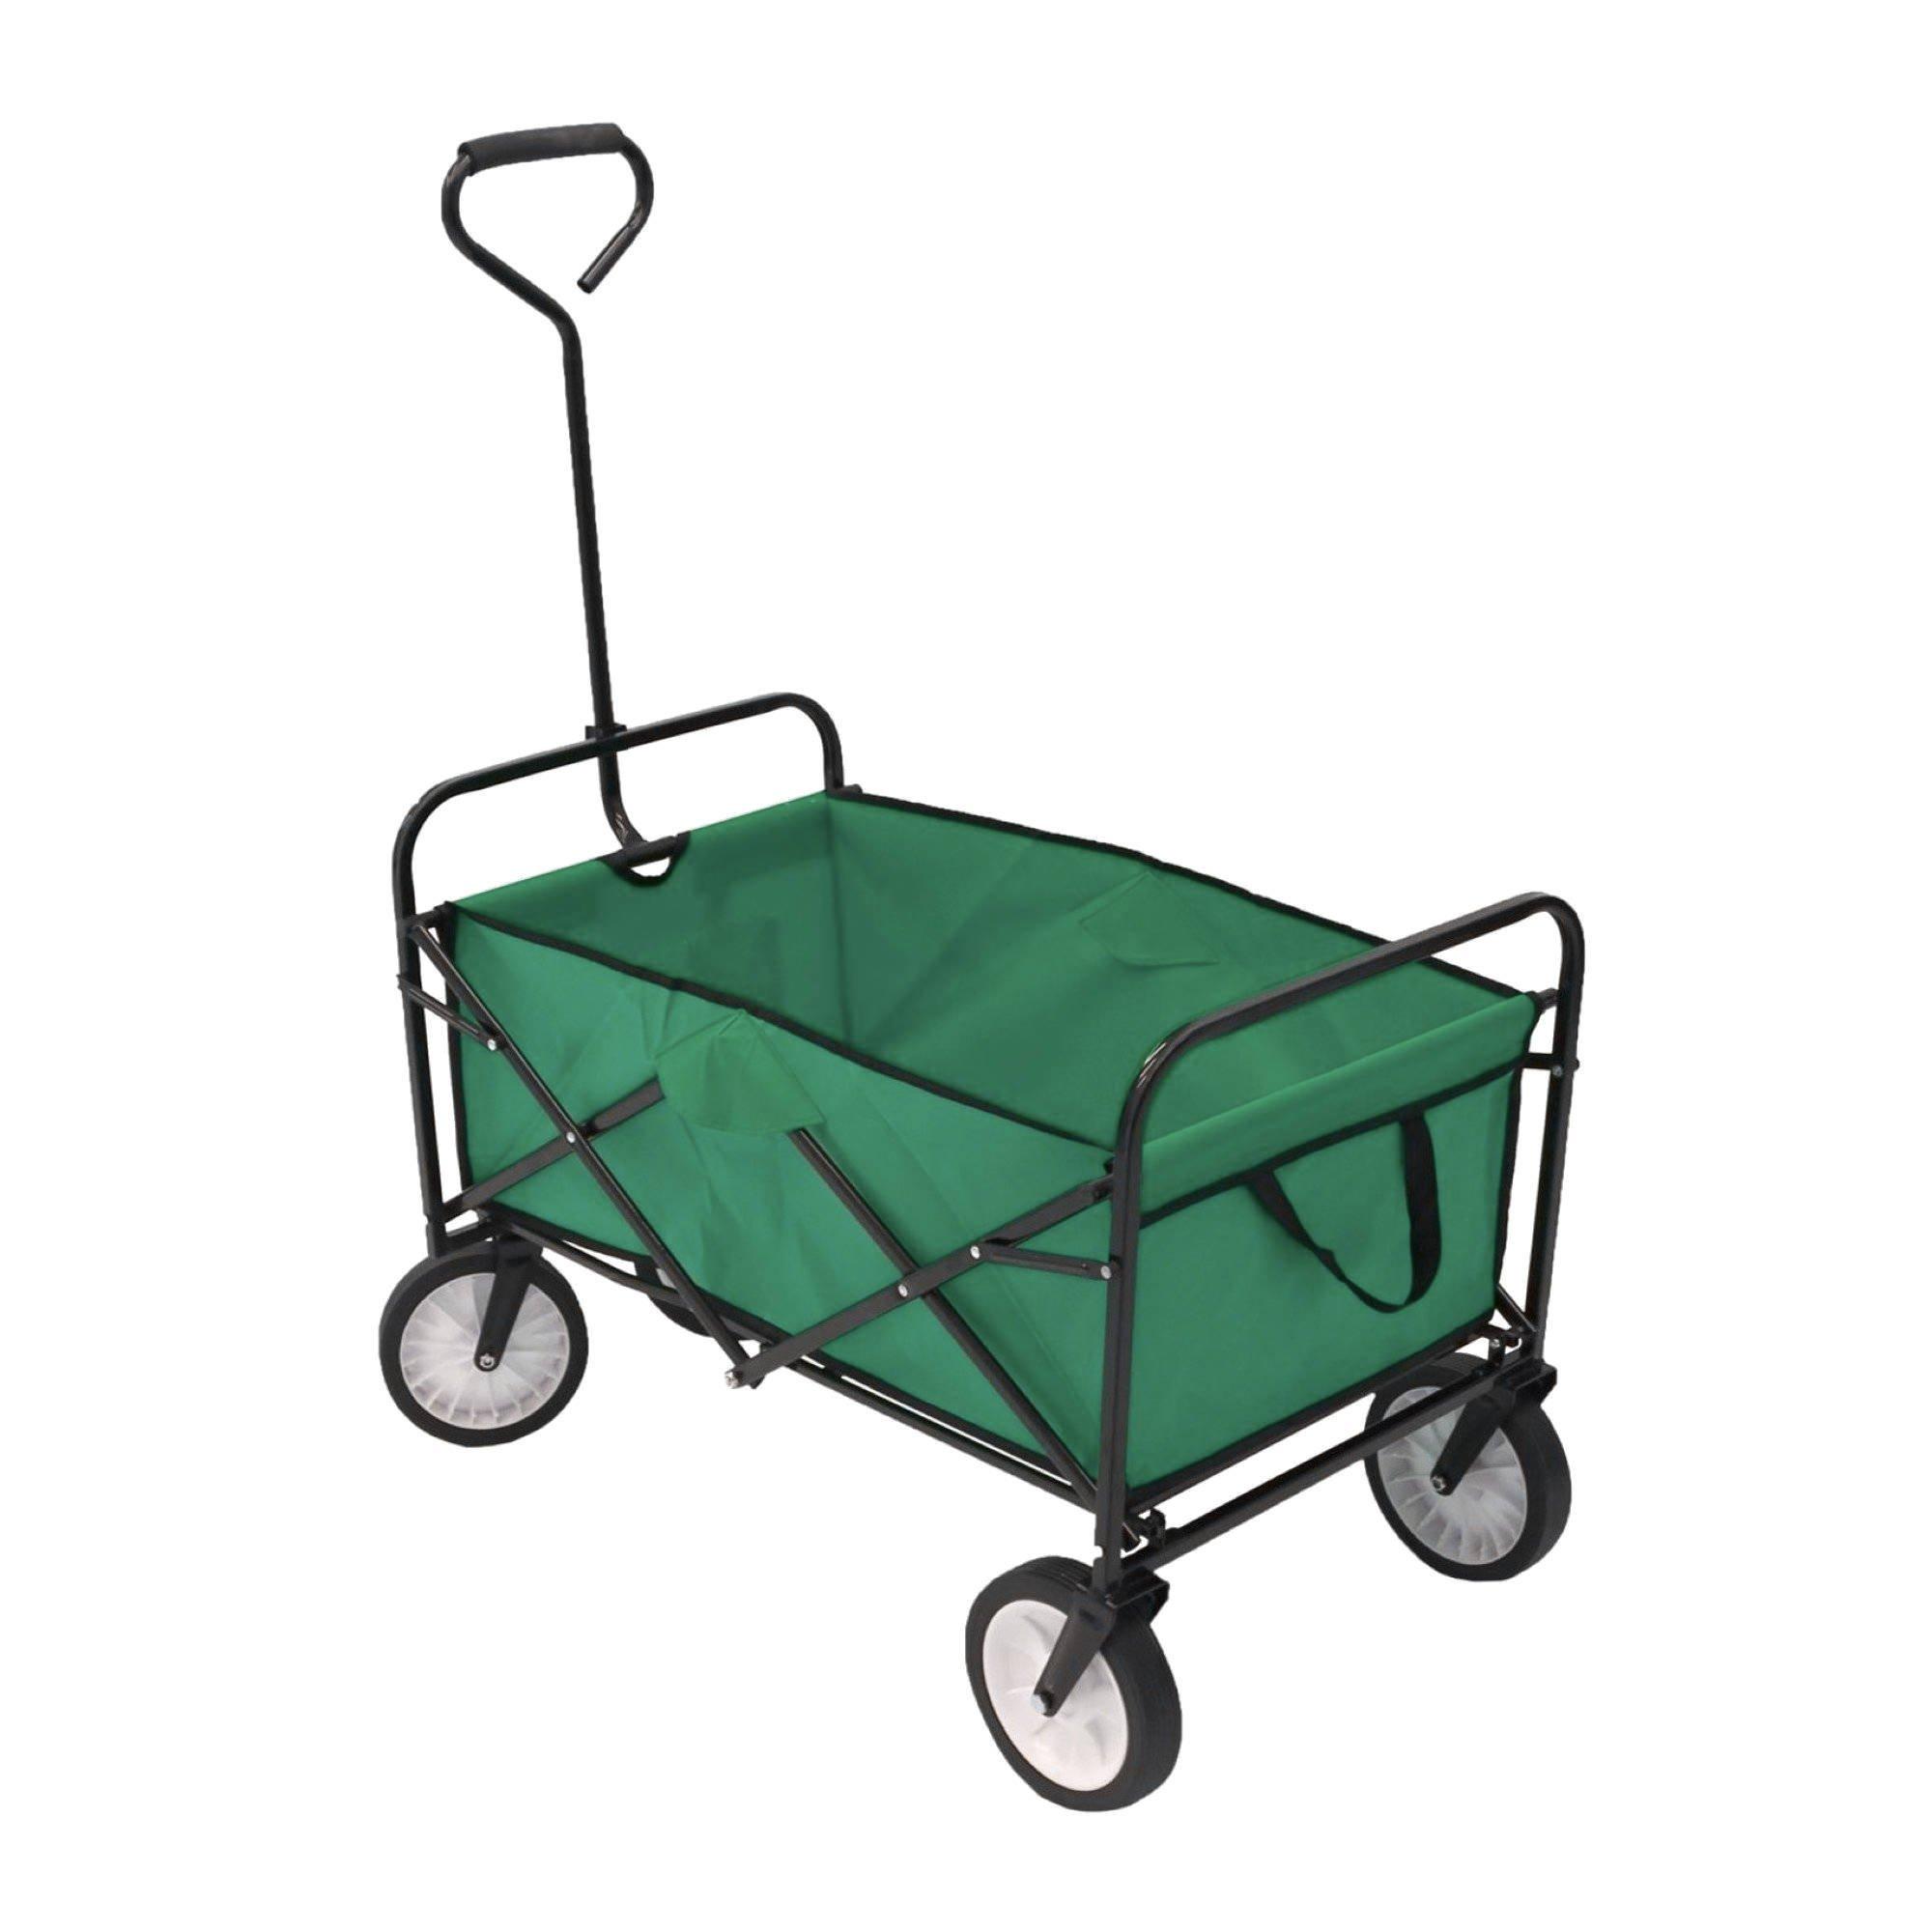 Heavy Duty Foldable Garden Trolley Cart